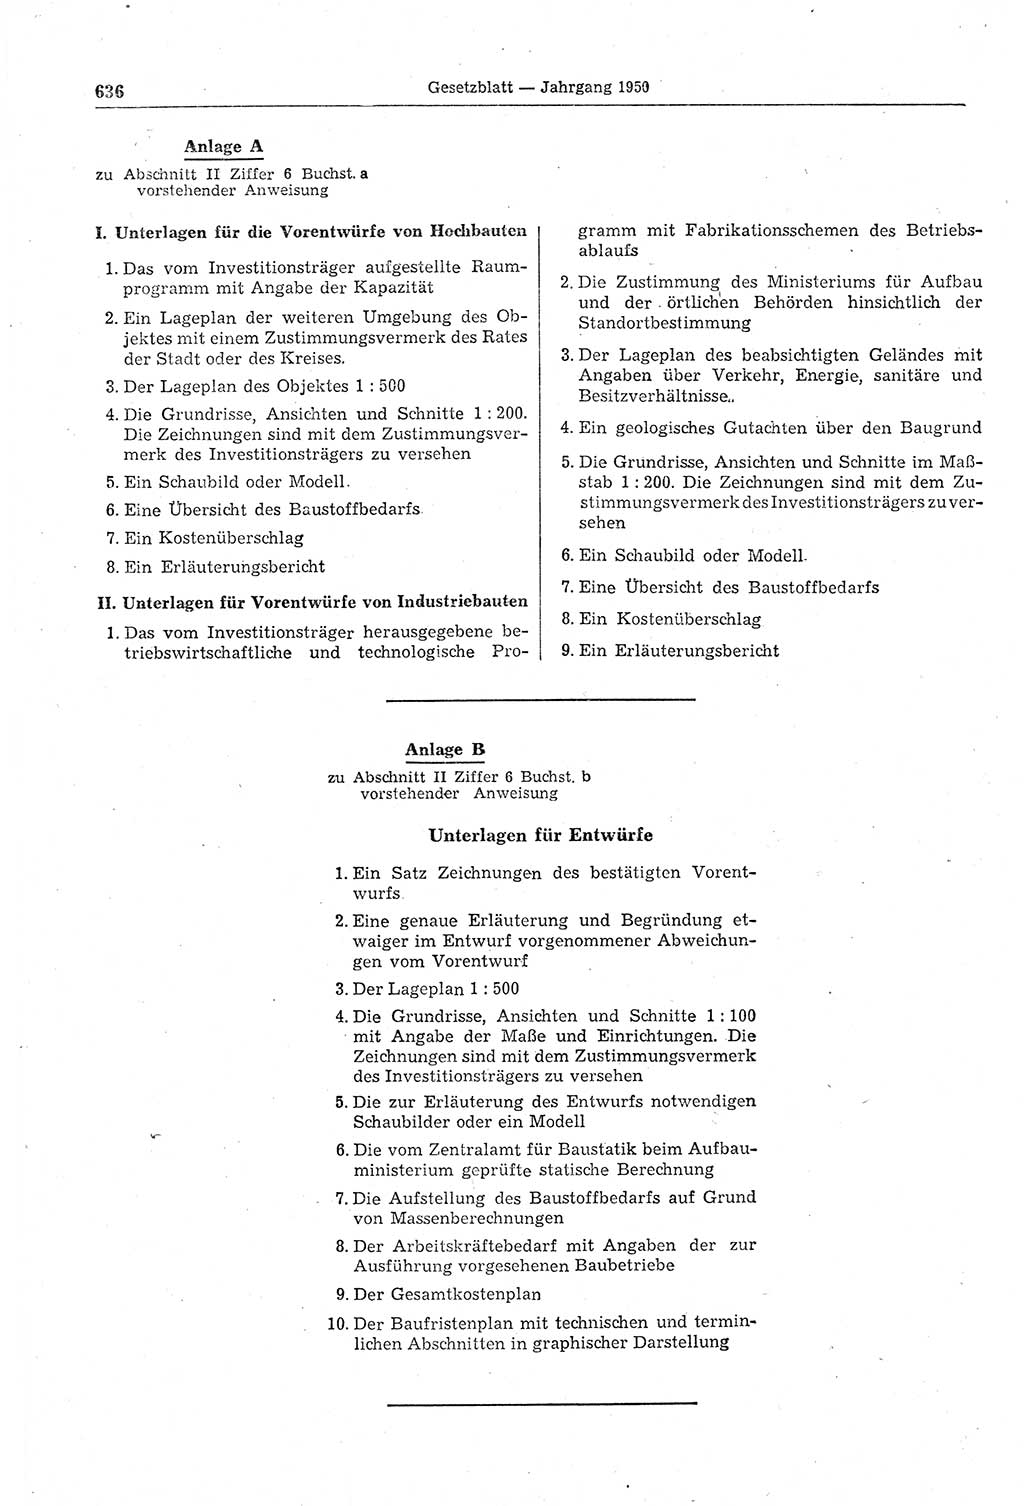 Gesetzblatt (GBl.) der Deutschen Demokratischen Republik (DDR) 1950, Seite 636 (GBl. DDR 1950, S. 636)